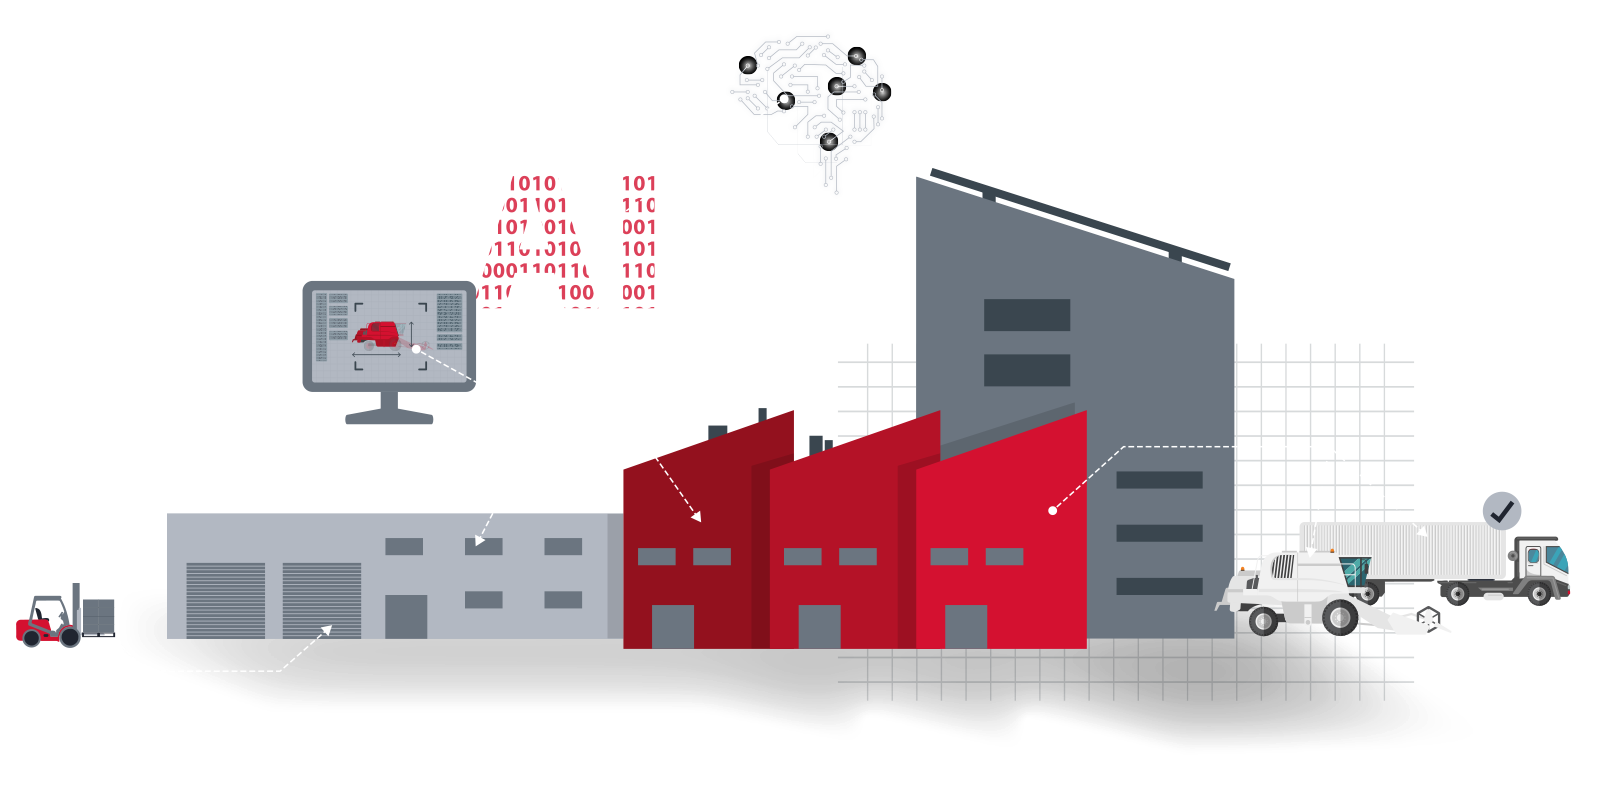 Hauptgrafik der Datenfabrik, Fabrikgebäude rot grau, ein Gabelstapler kommt von links ins Bild, darüber eine Konstruktionszeichnung auf einem Monitor, ein AI Symbol und ein Gehirn mit Datenströmen.